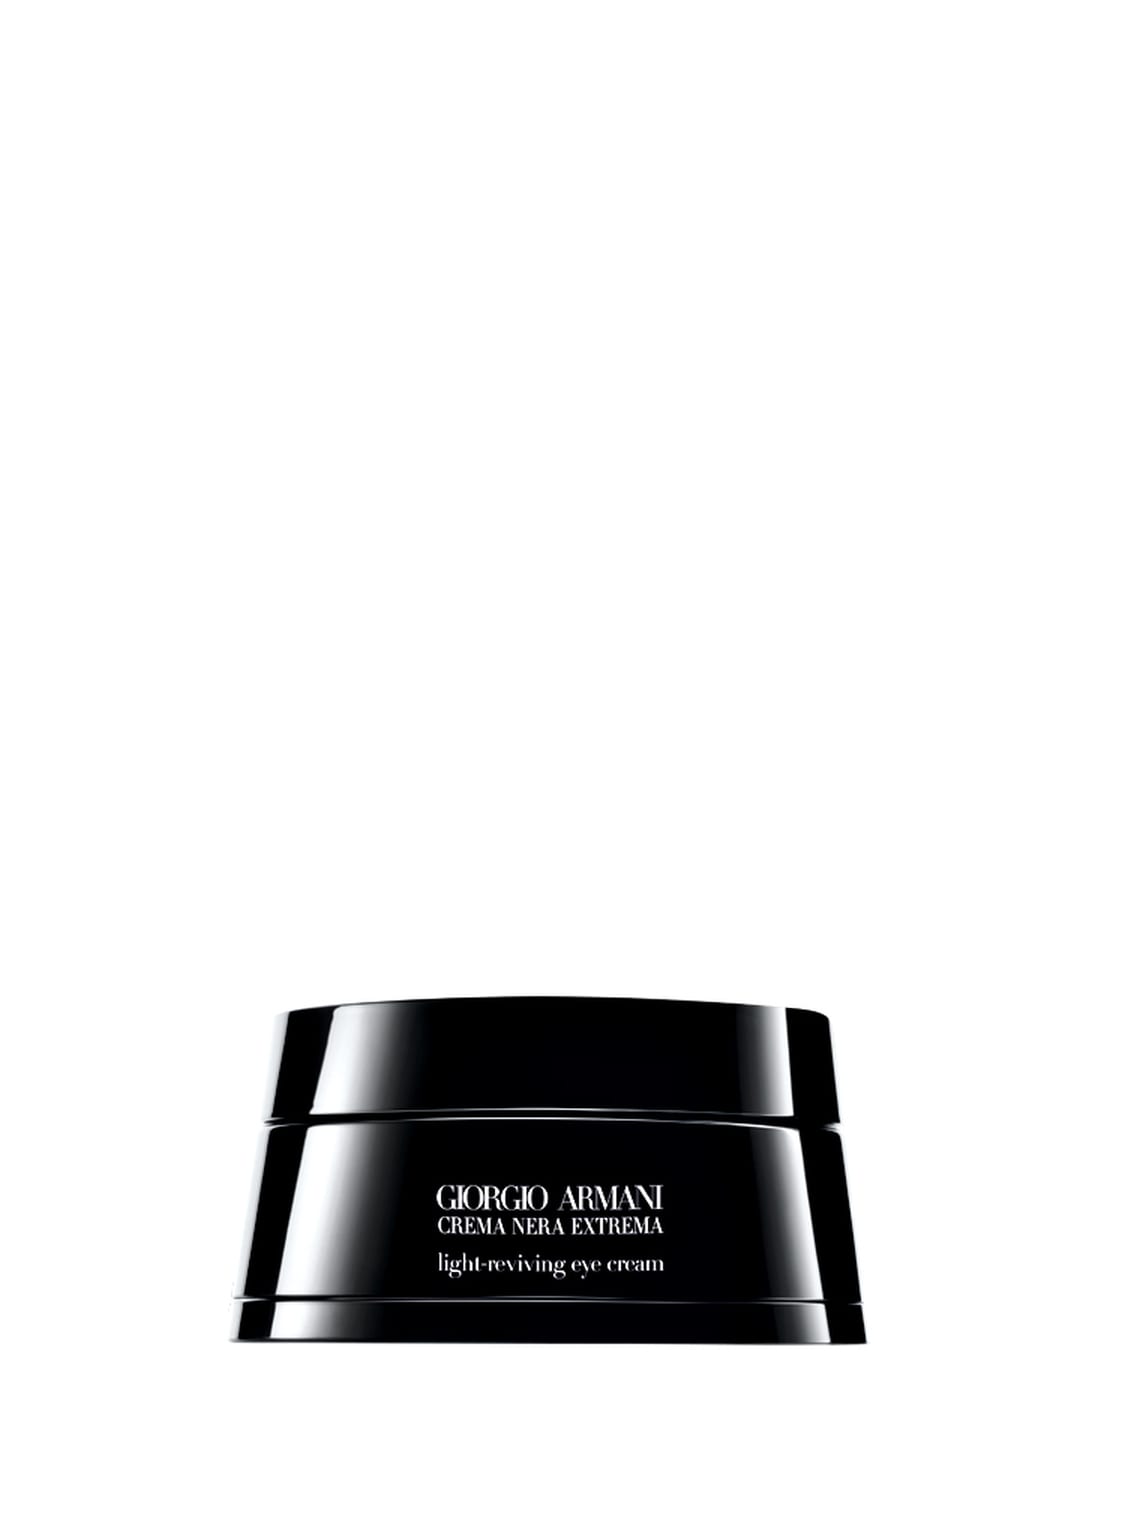 Giorgio Armani Beauty Crema Nera Extrema Light-Reviving Eye Cream 15 ml von GIORGIO ARMANI BEAUTY